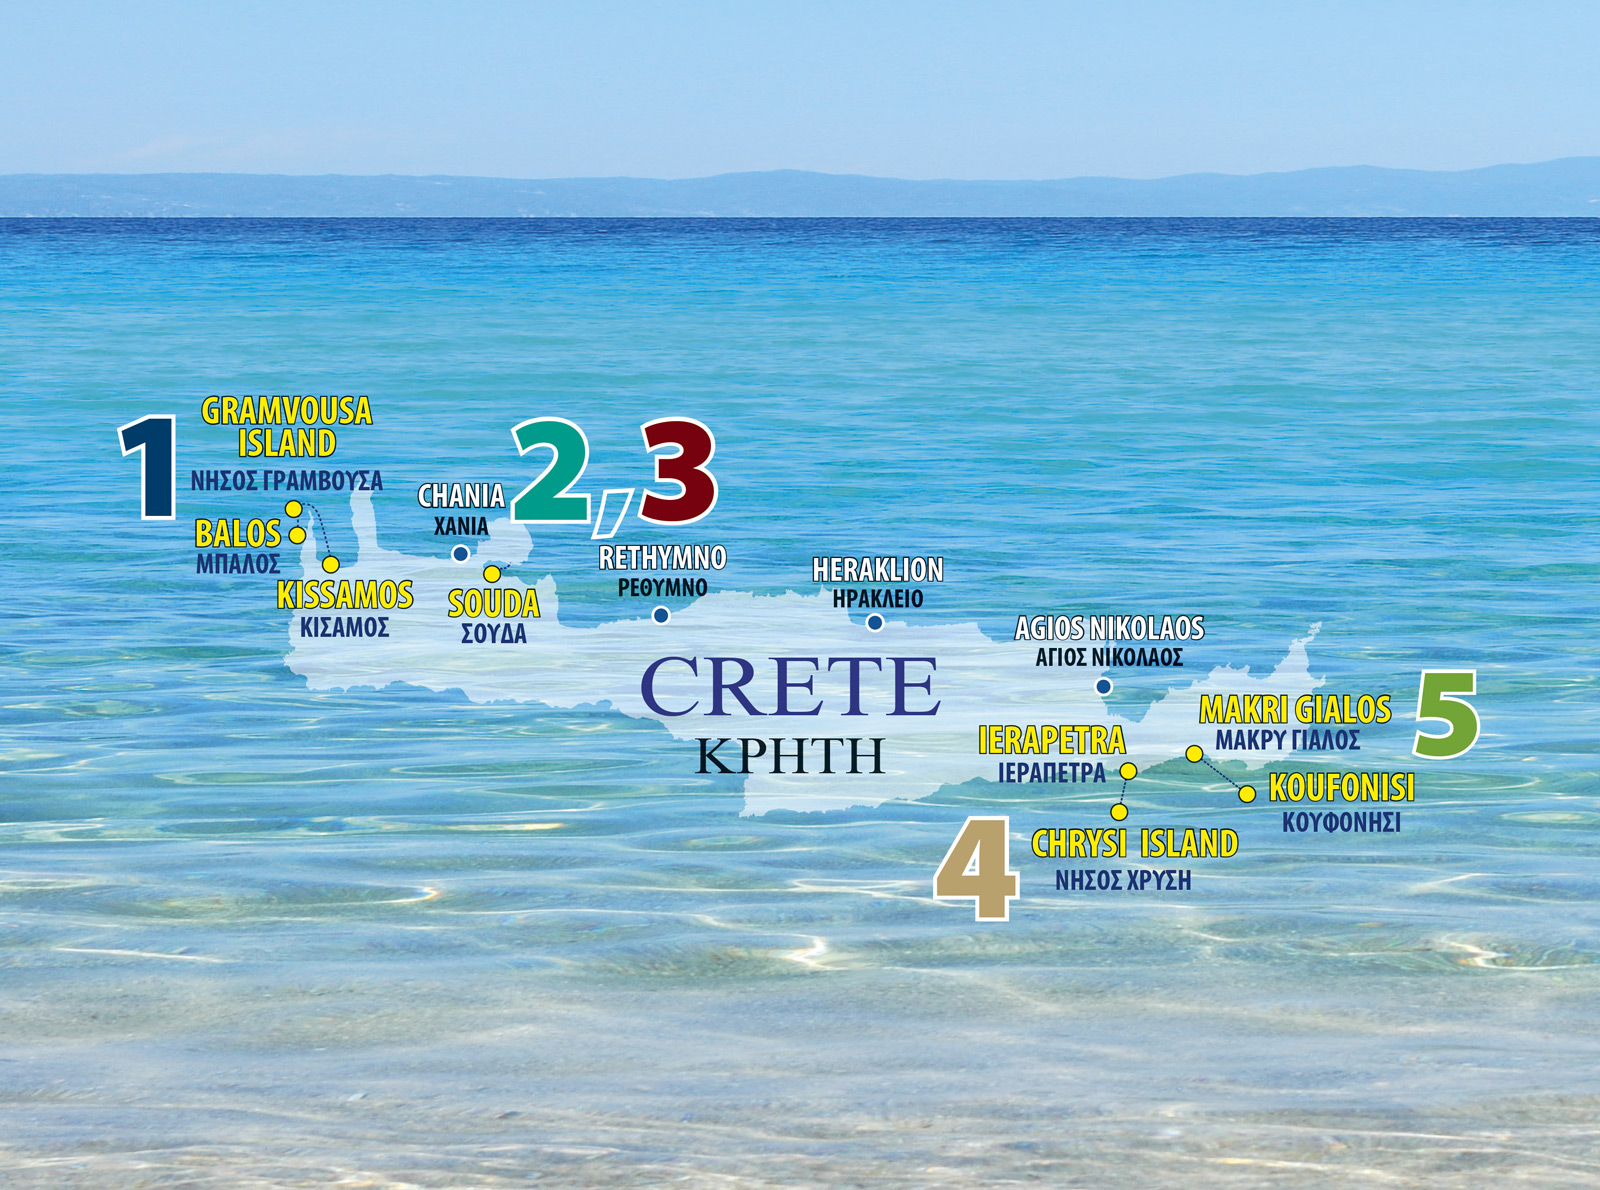 Κρουαζιέρες στην υπέροχη Κρήτη – Ανακαλύψετε τους “επίγειους παραδείσους”